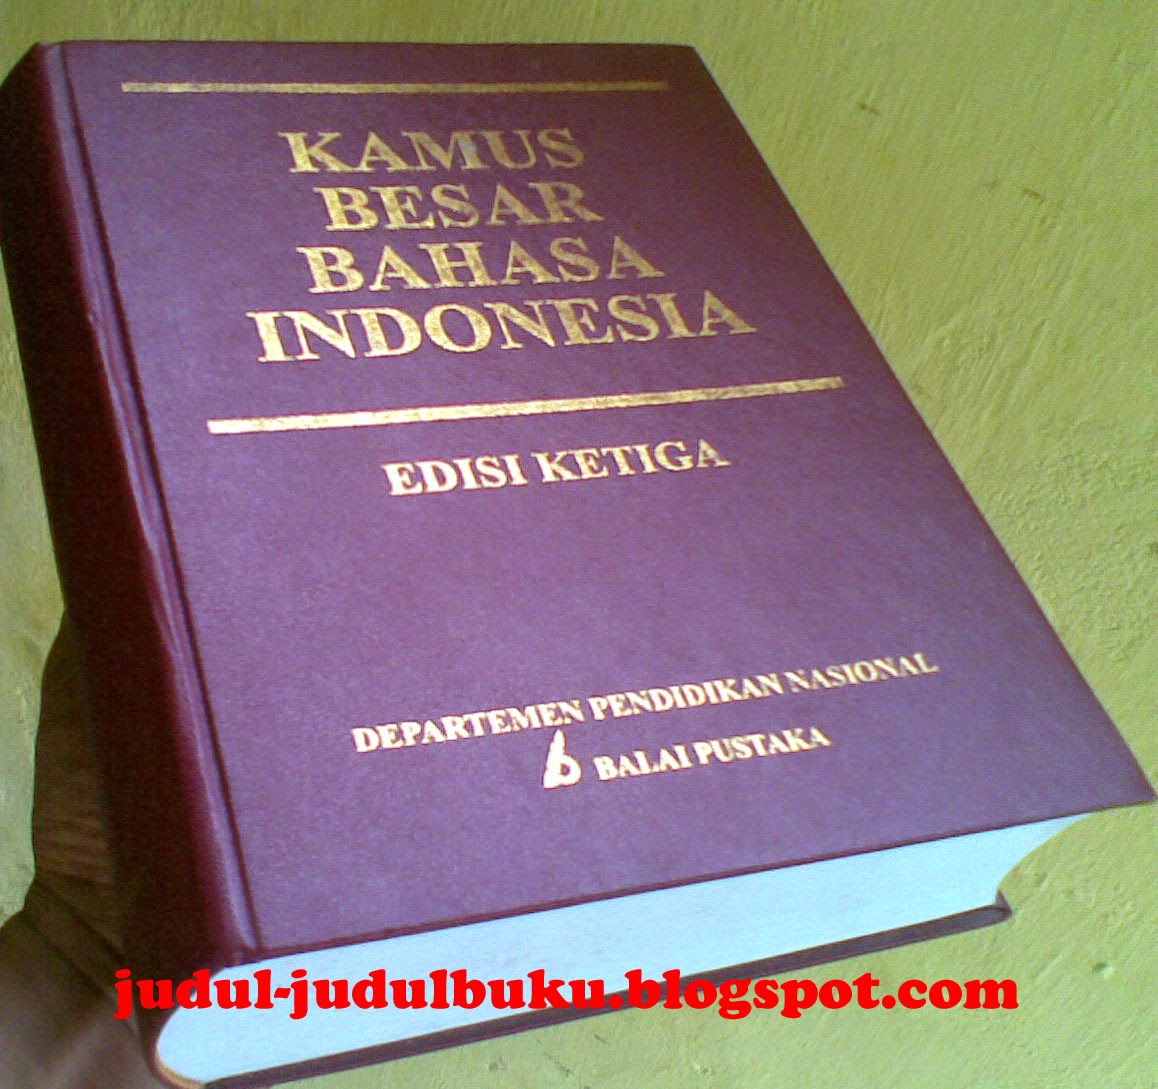 Buku Kamus  Besar Bahasa  Indonesia  JUDUL JUDUL BUKU